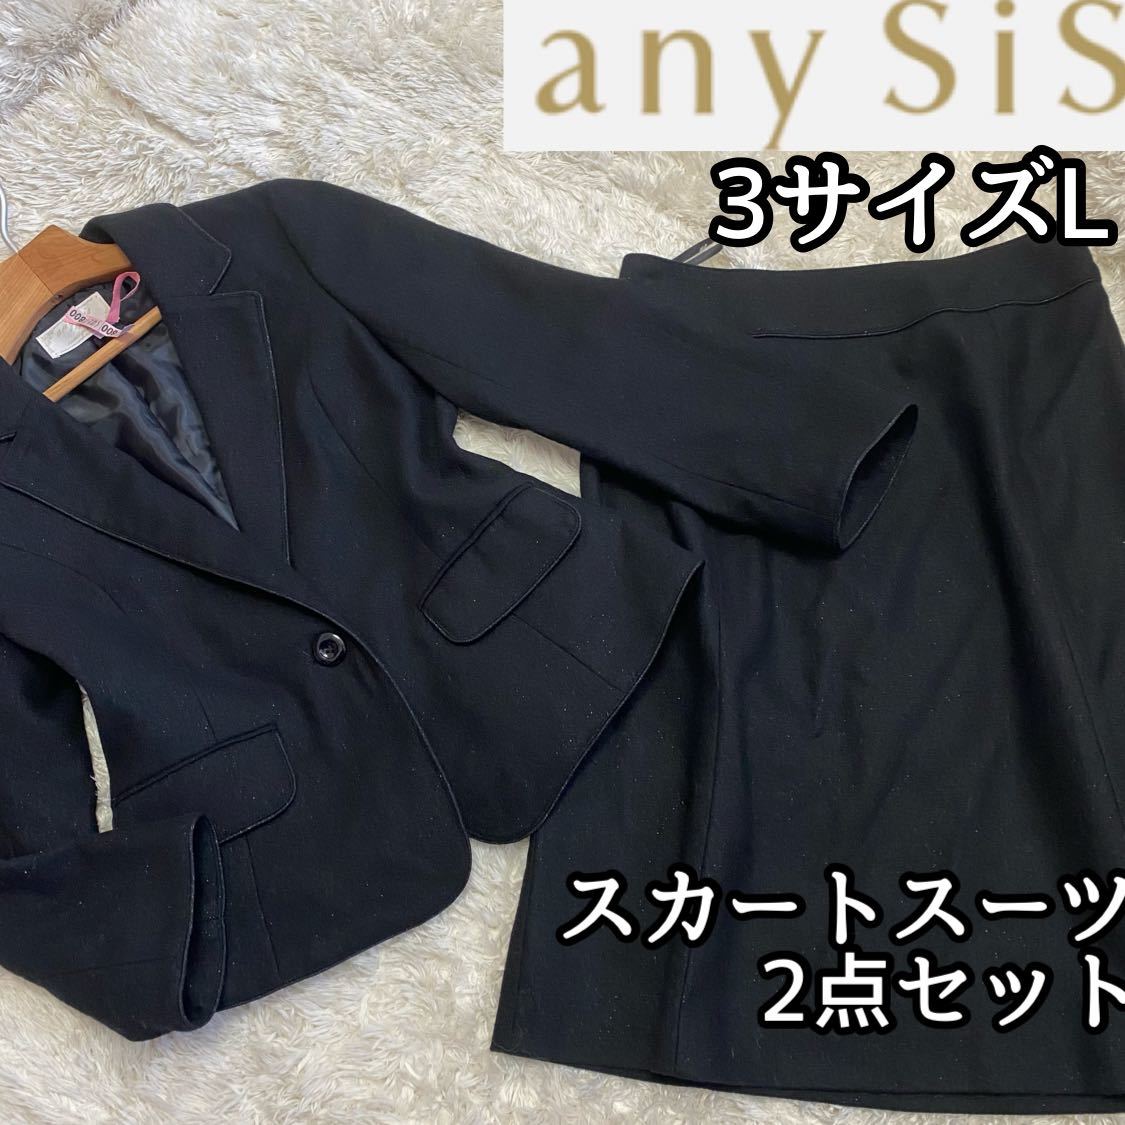 ラメ黒【any sis】スカートスーツ上下セット3サイズLオンワード樫山 